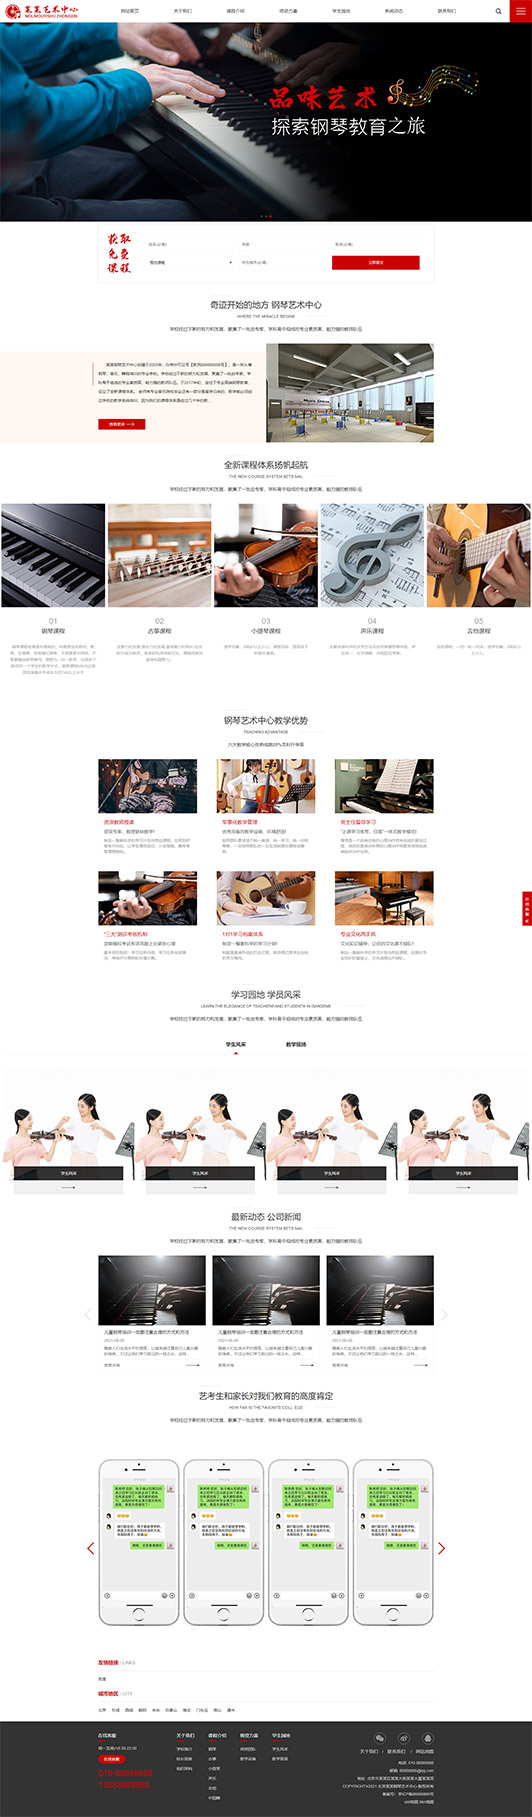 扬州钢琴艺术培训公司响应式企业网站